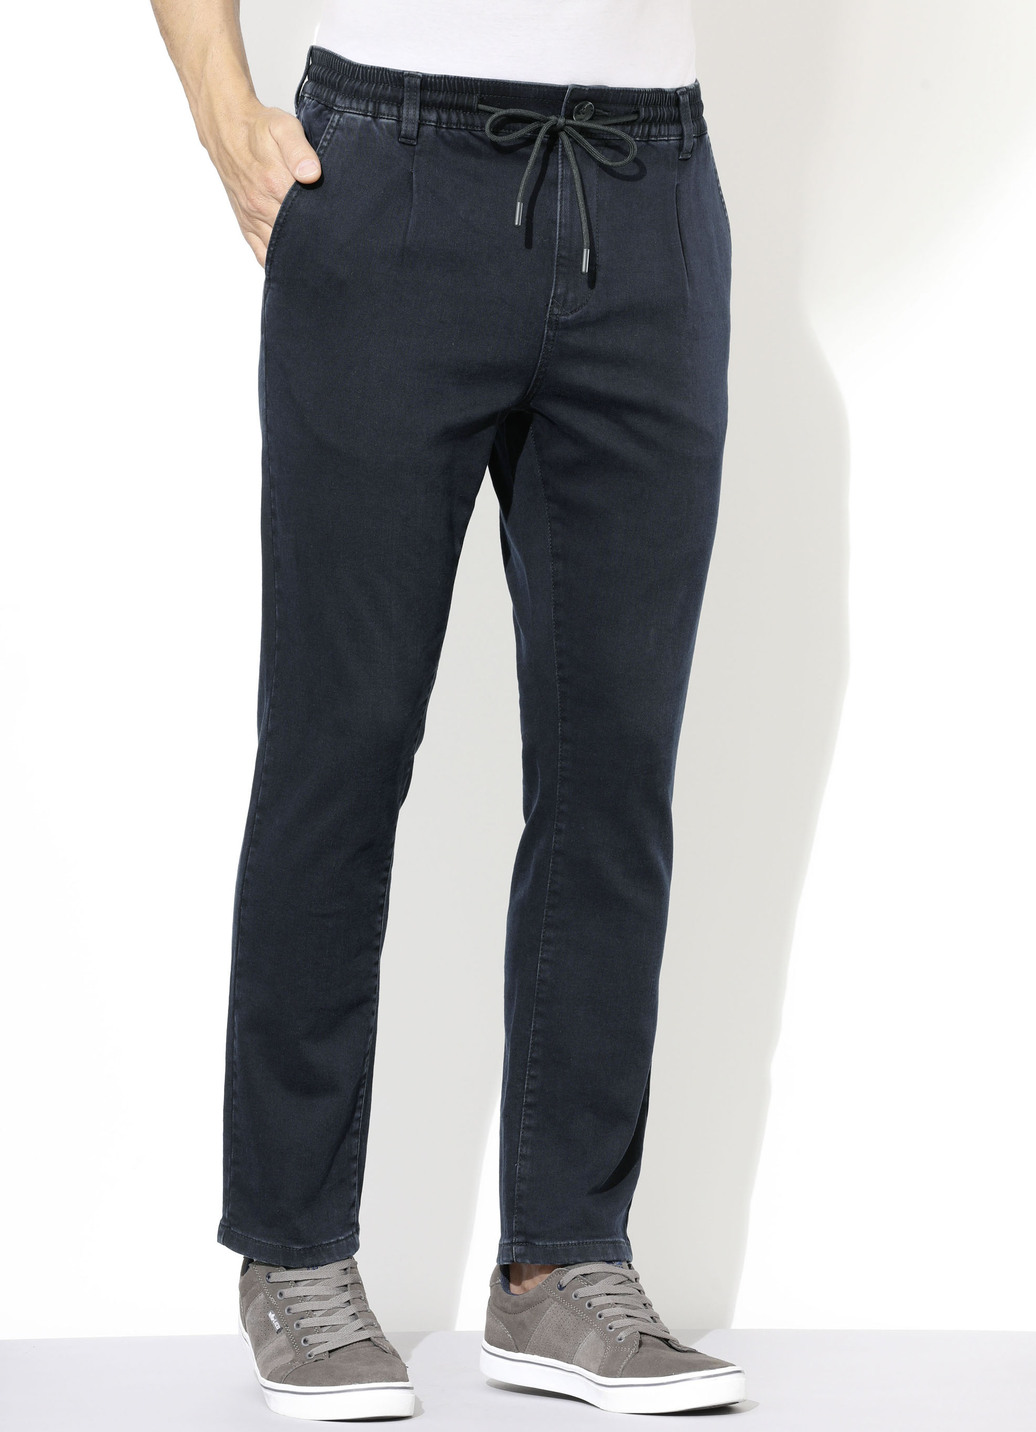 Superstretch-Jeans in 3 Farben, Dunkelblau, Größe 30 von DANNECKER